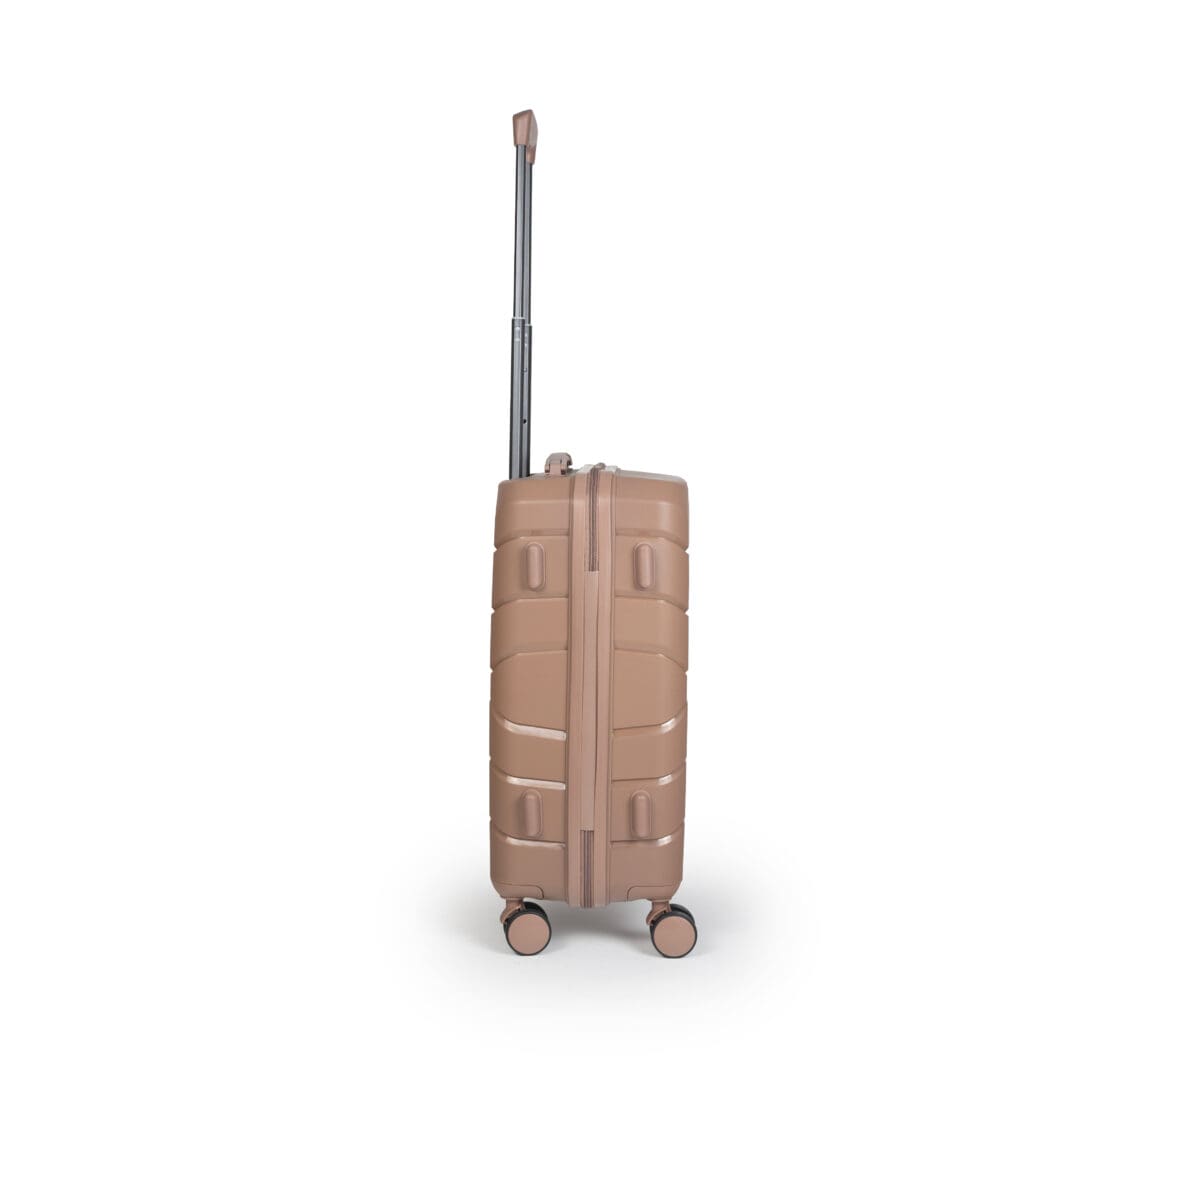 Βαλίτσα χειραποσκευή (καμπίνας) με tsa lock διπλά ροδάκια από πολυπροπυλένιο άθραυστο υλικό σε μαύρο ροζ